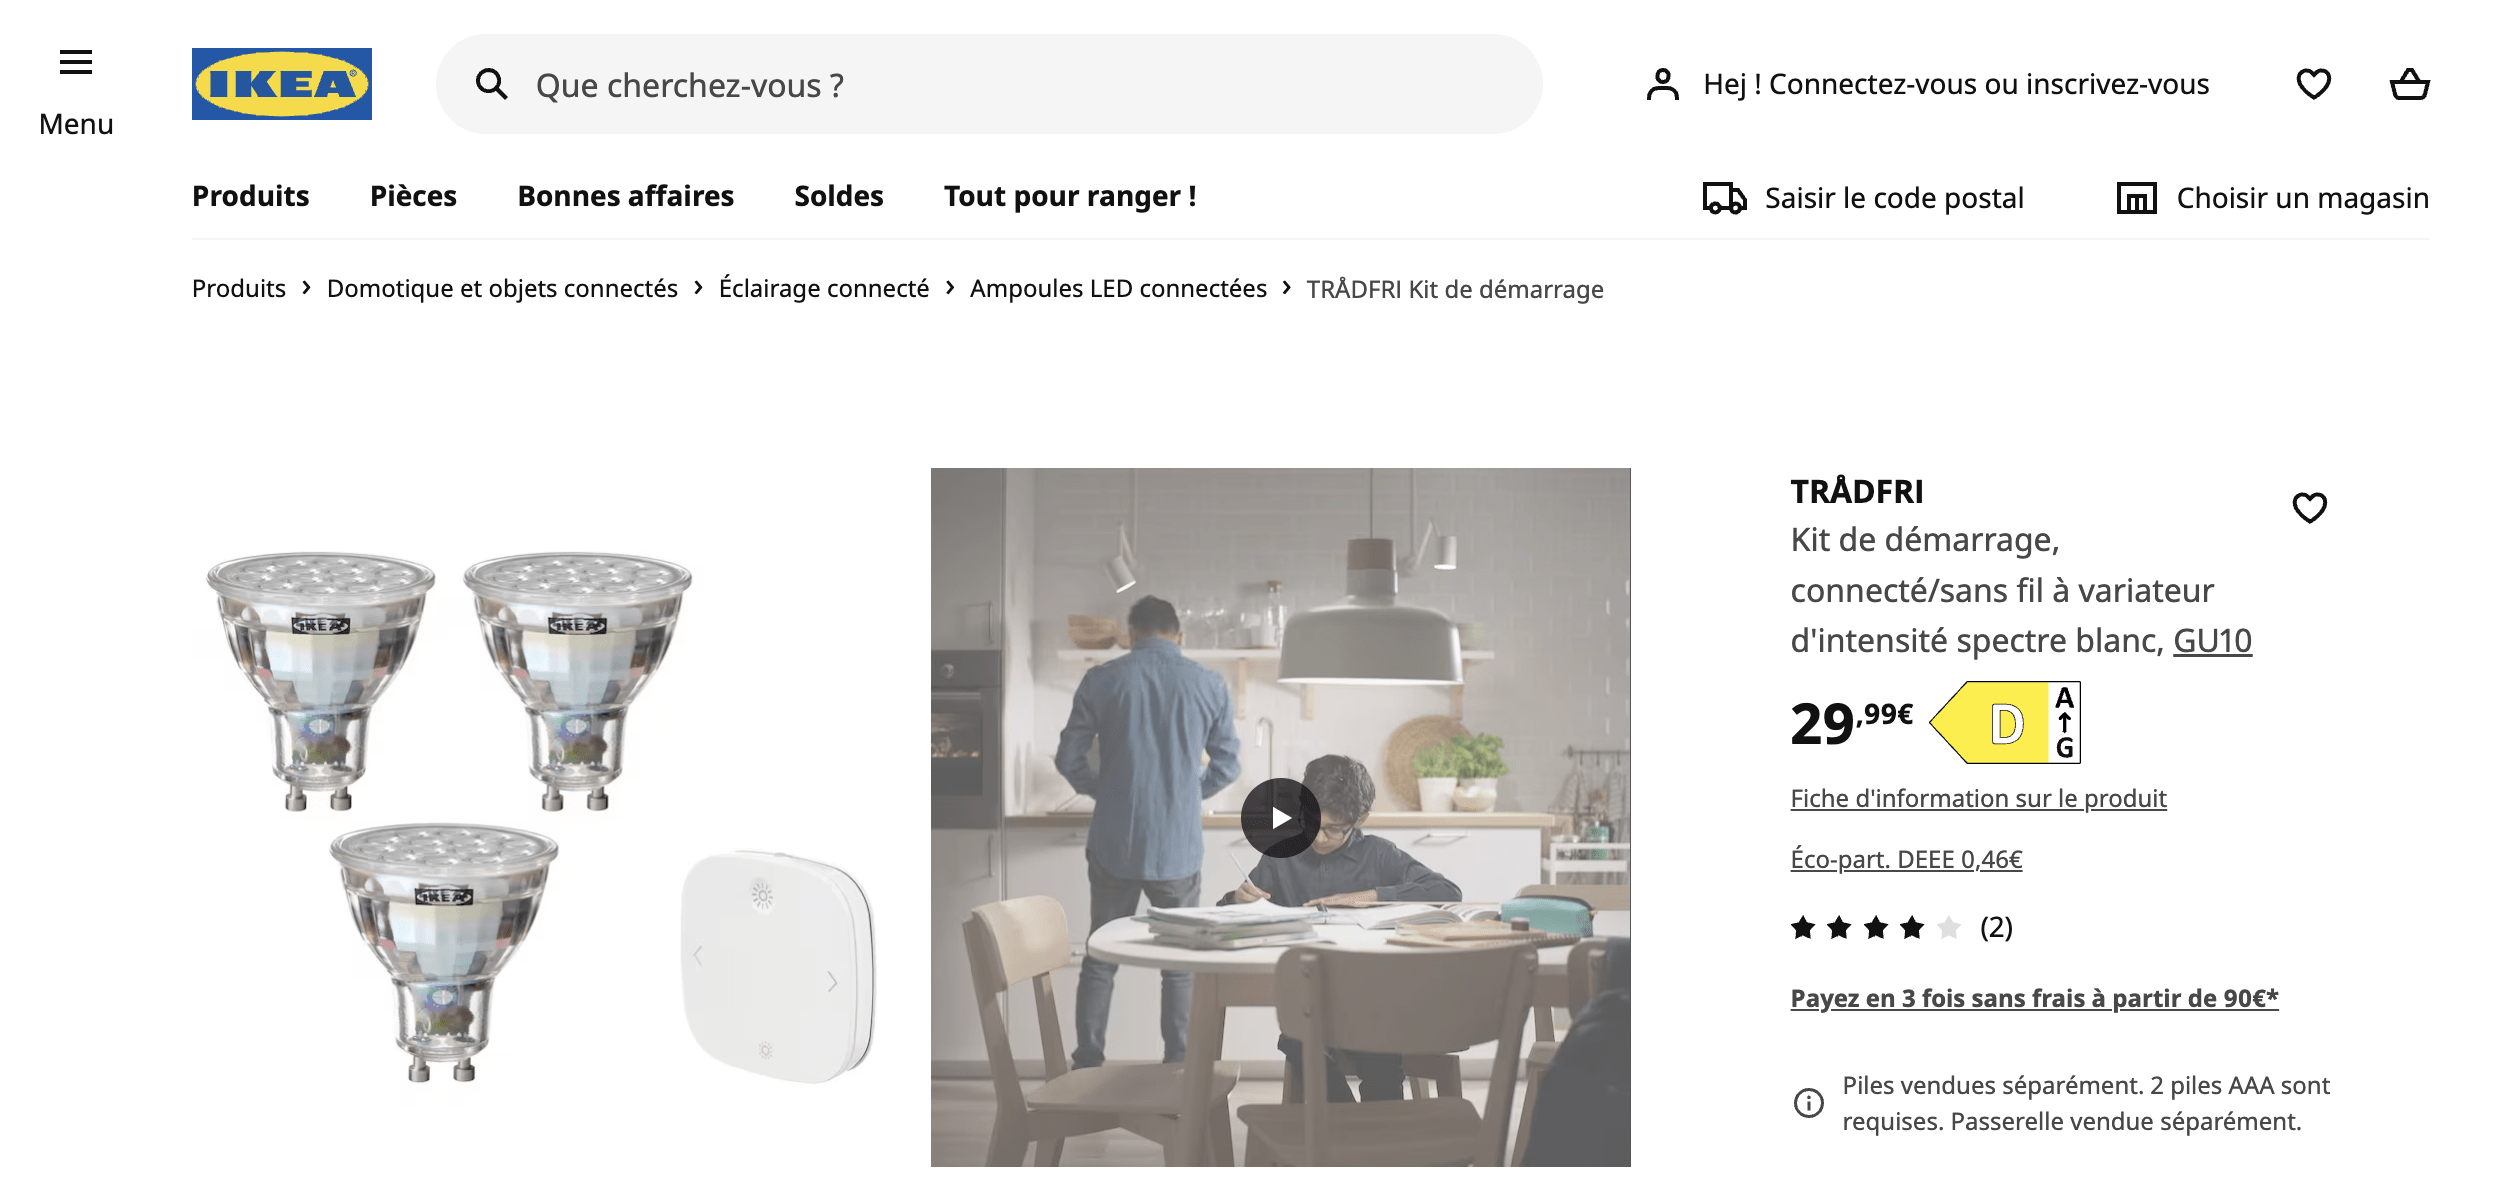 Screenshot from IKEA website